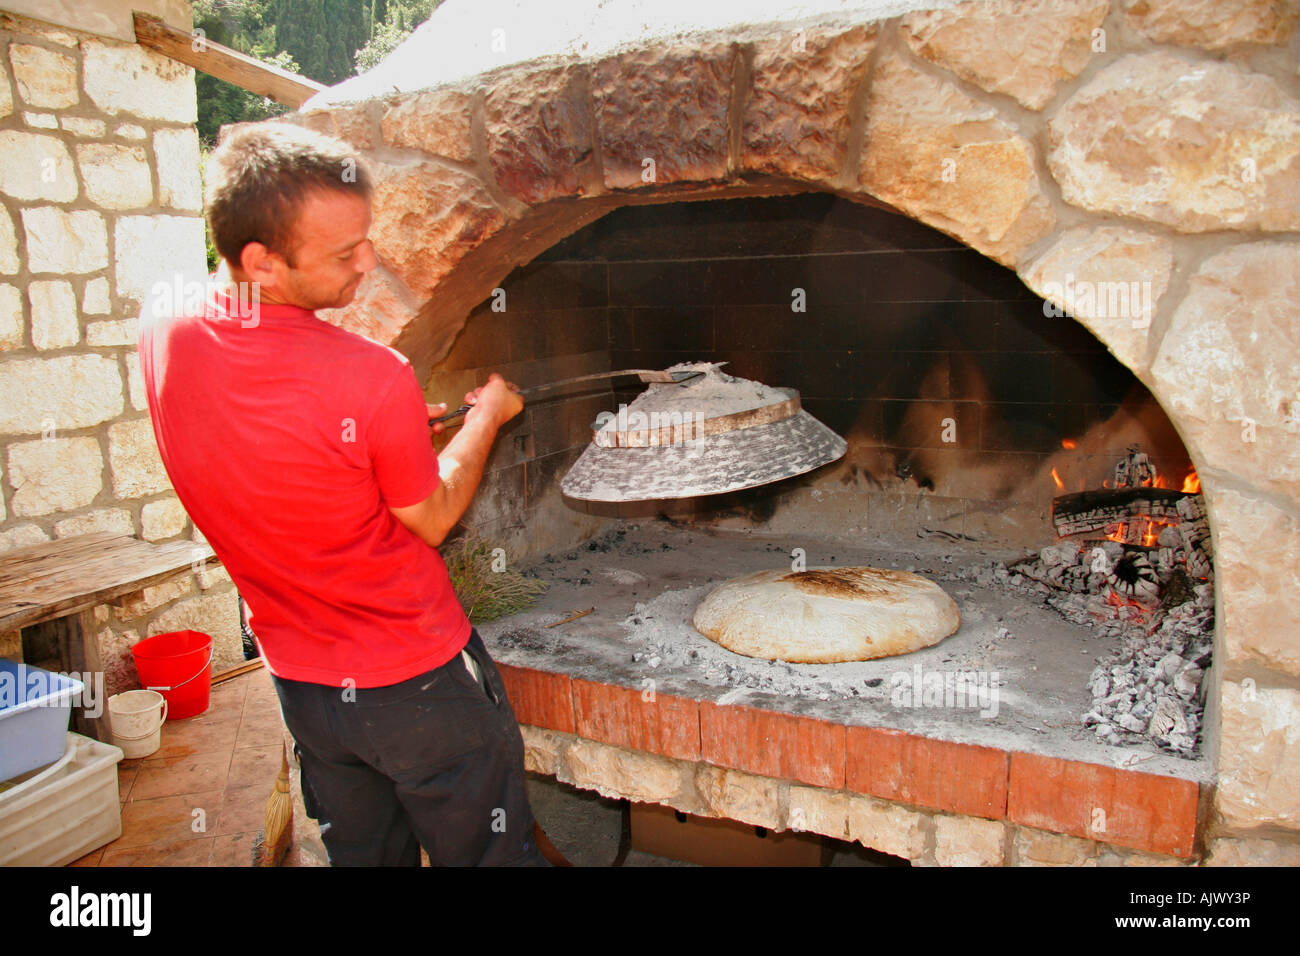 HRV Kroatien Dubrovnik, Fladenbrot wird in Kobas im Steinofen gebacken | Croazia, piatto pane cotto in un forno di pietra in Kobas Foto Stock